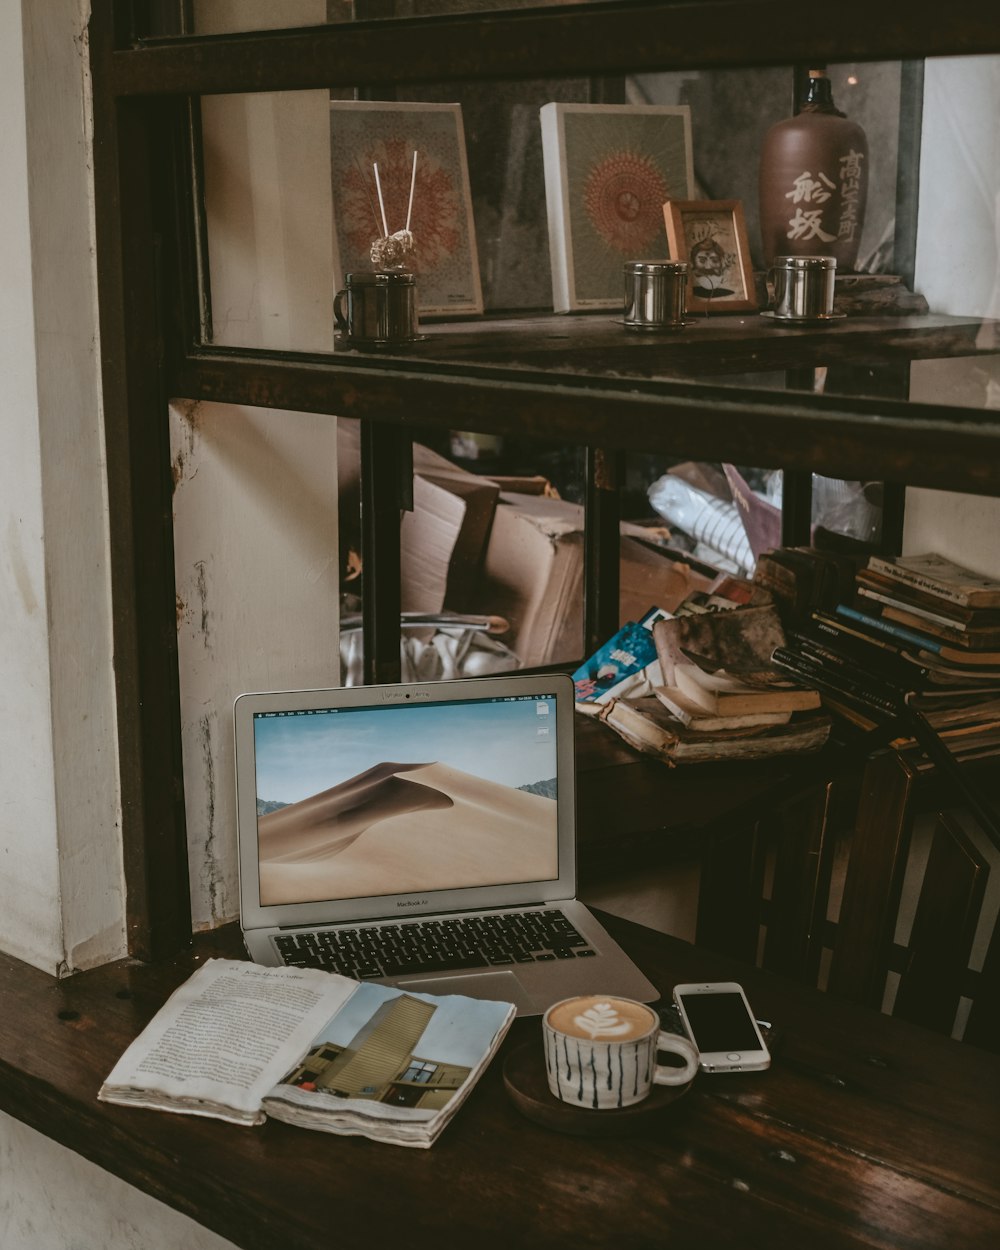 MacBook Air neben einer Tasse Kaffee, Latte und Smartphone